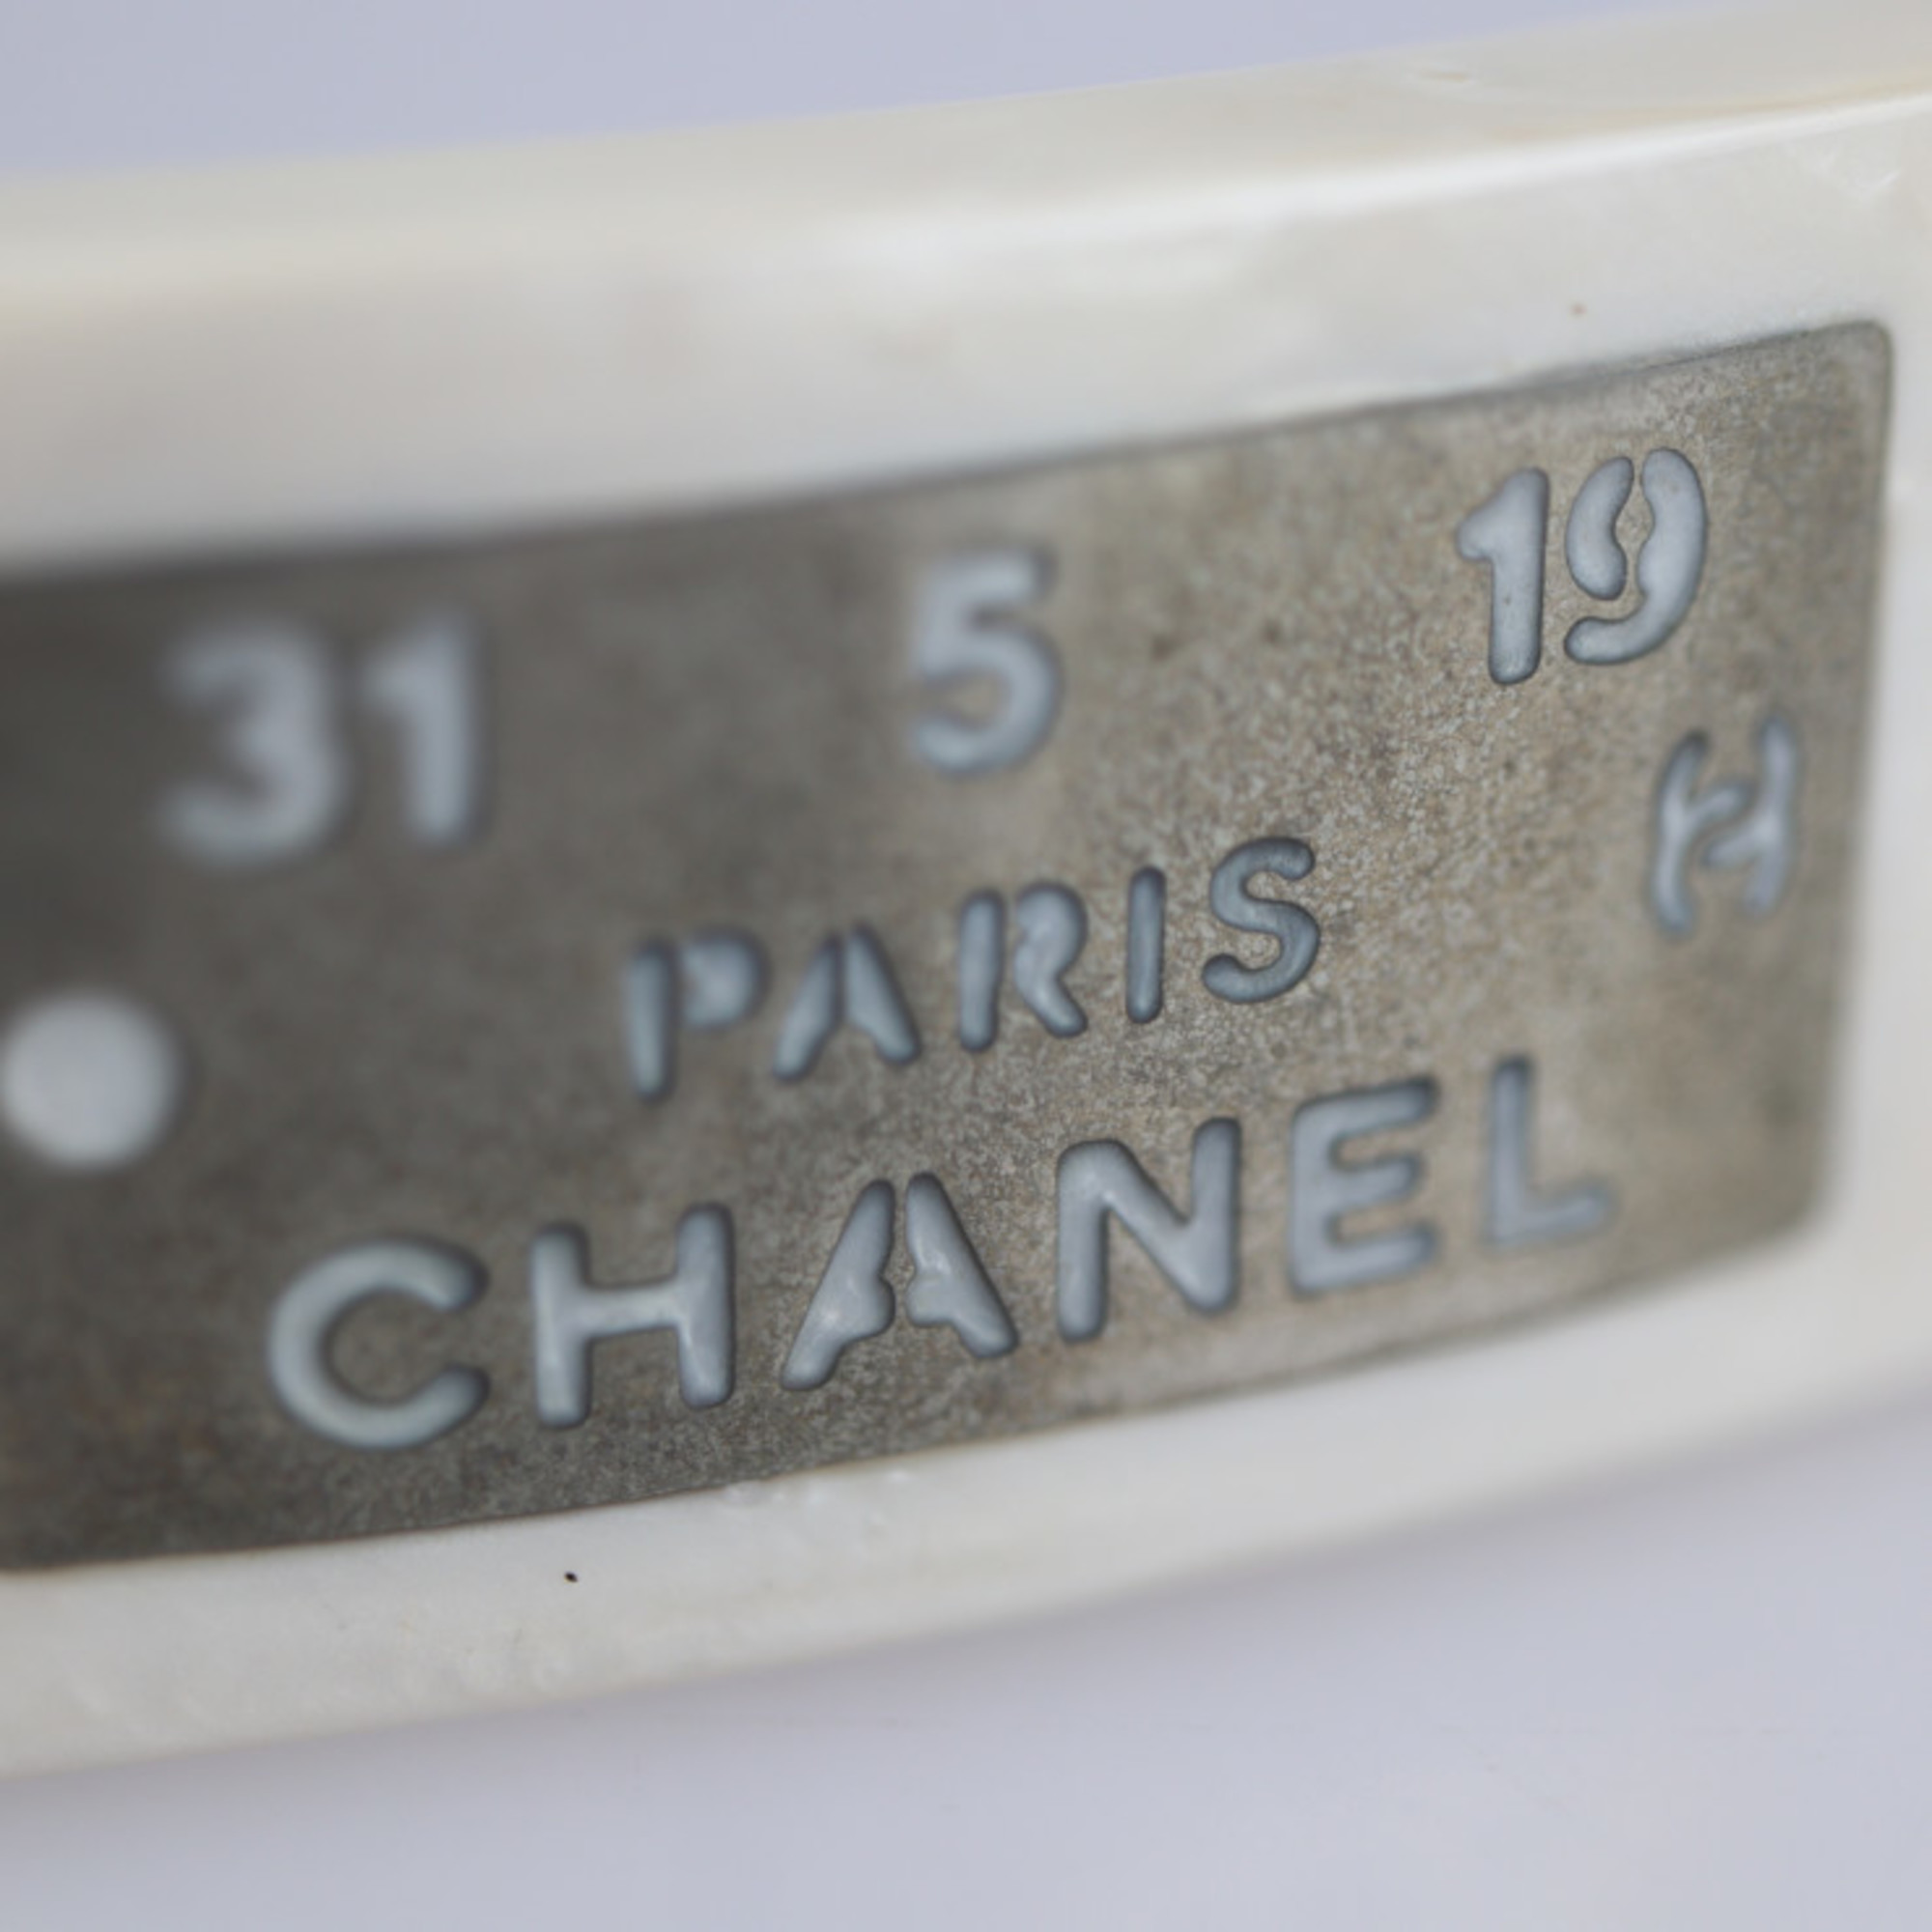 CHANEL Chanel barrette plastic metal white series silver 99A logo hair accessory clip ornament